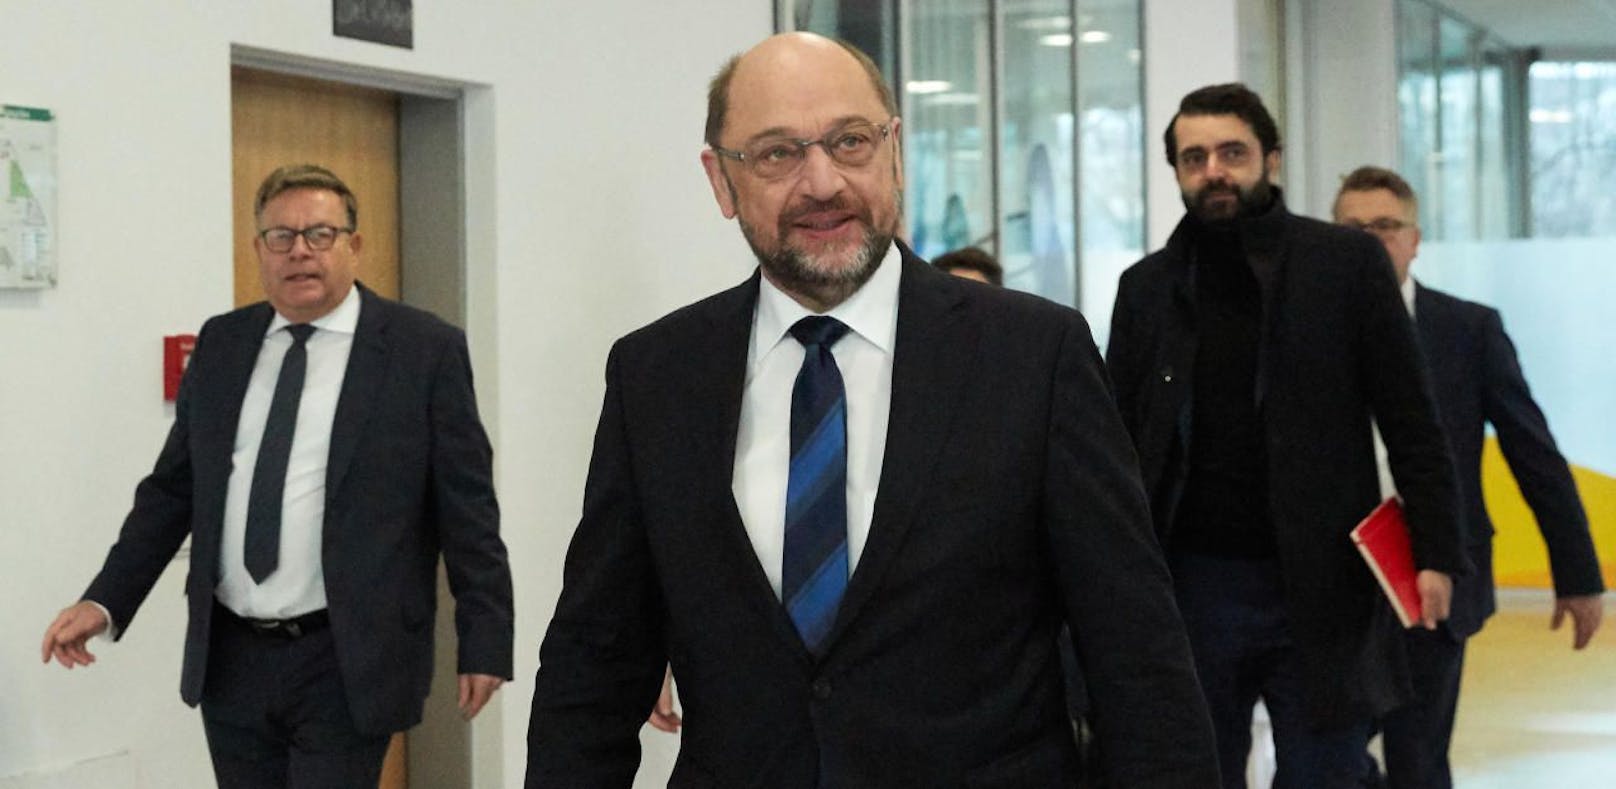 SPD-Vorsitzender Martin Schulz trifft zu den Gesprächen in Berlin ein. Er wird neuer deutscher Außenminister.